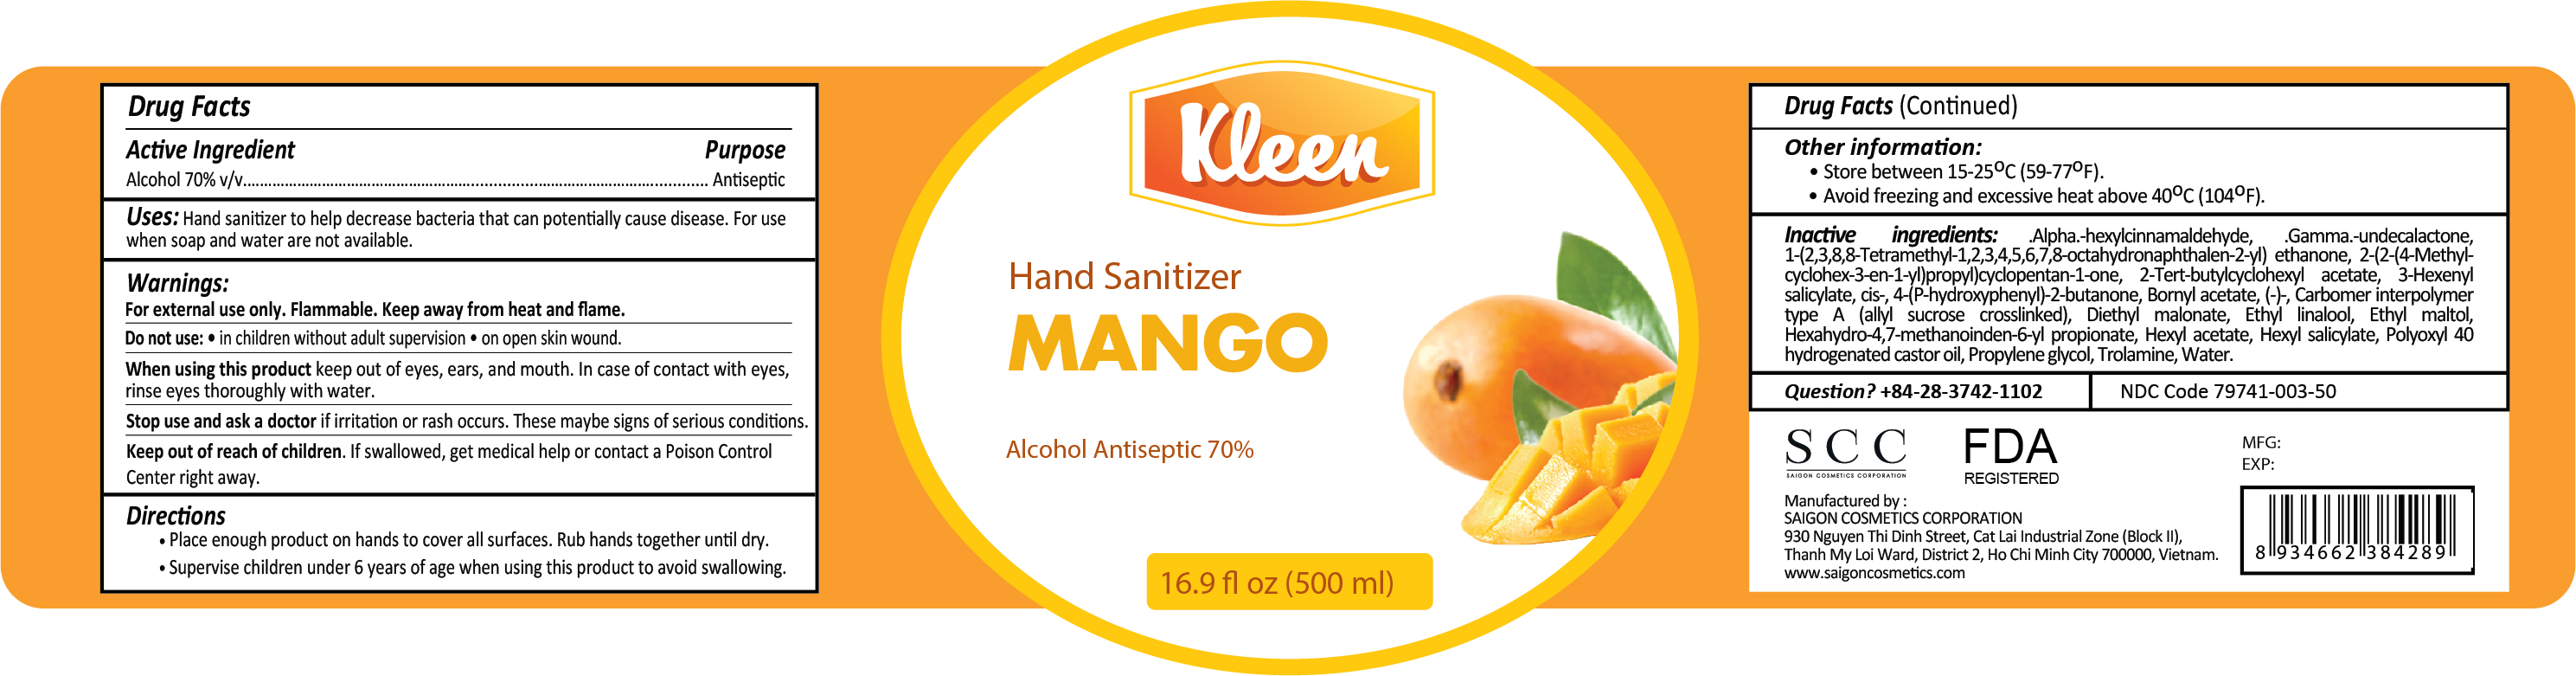 Kleen Hand Sanitizer Mango 500ml Label